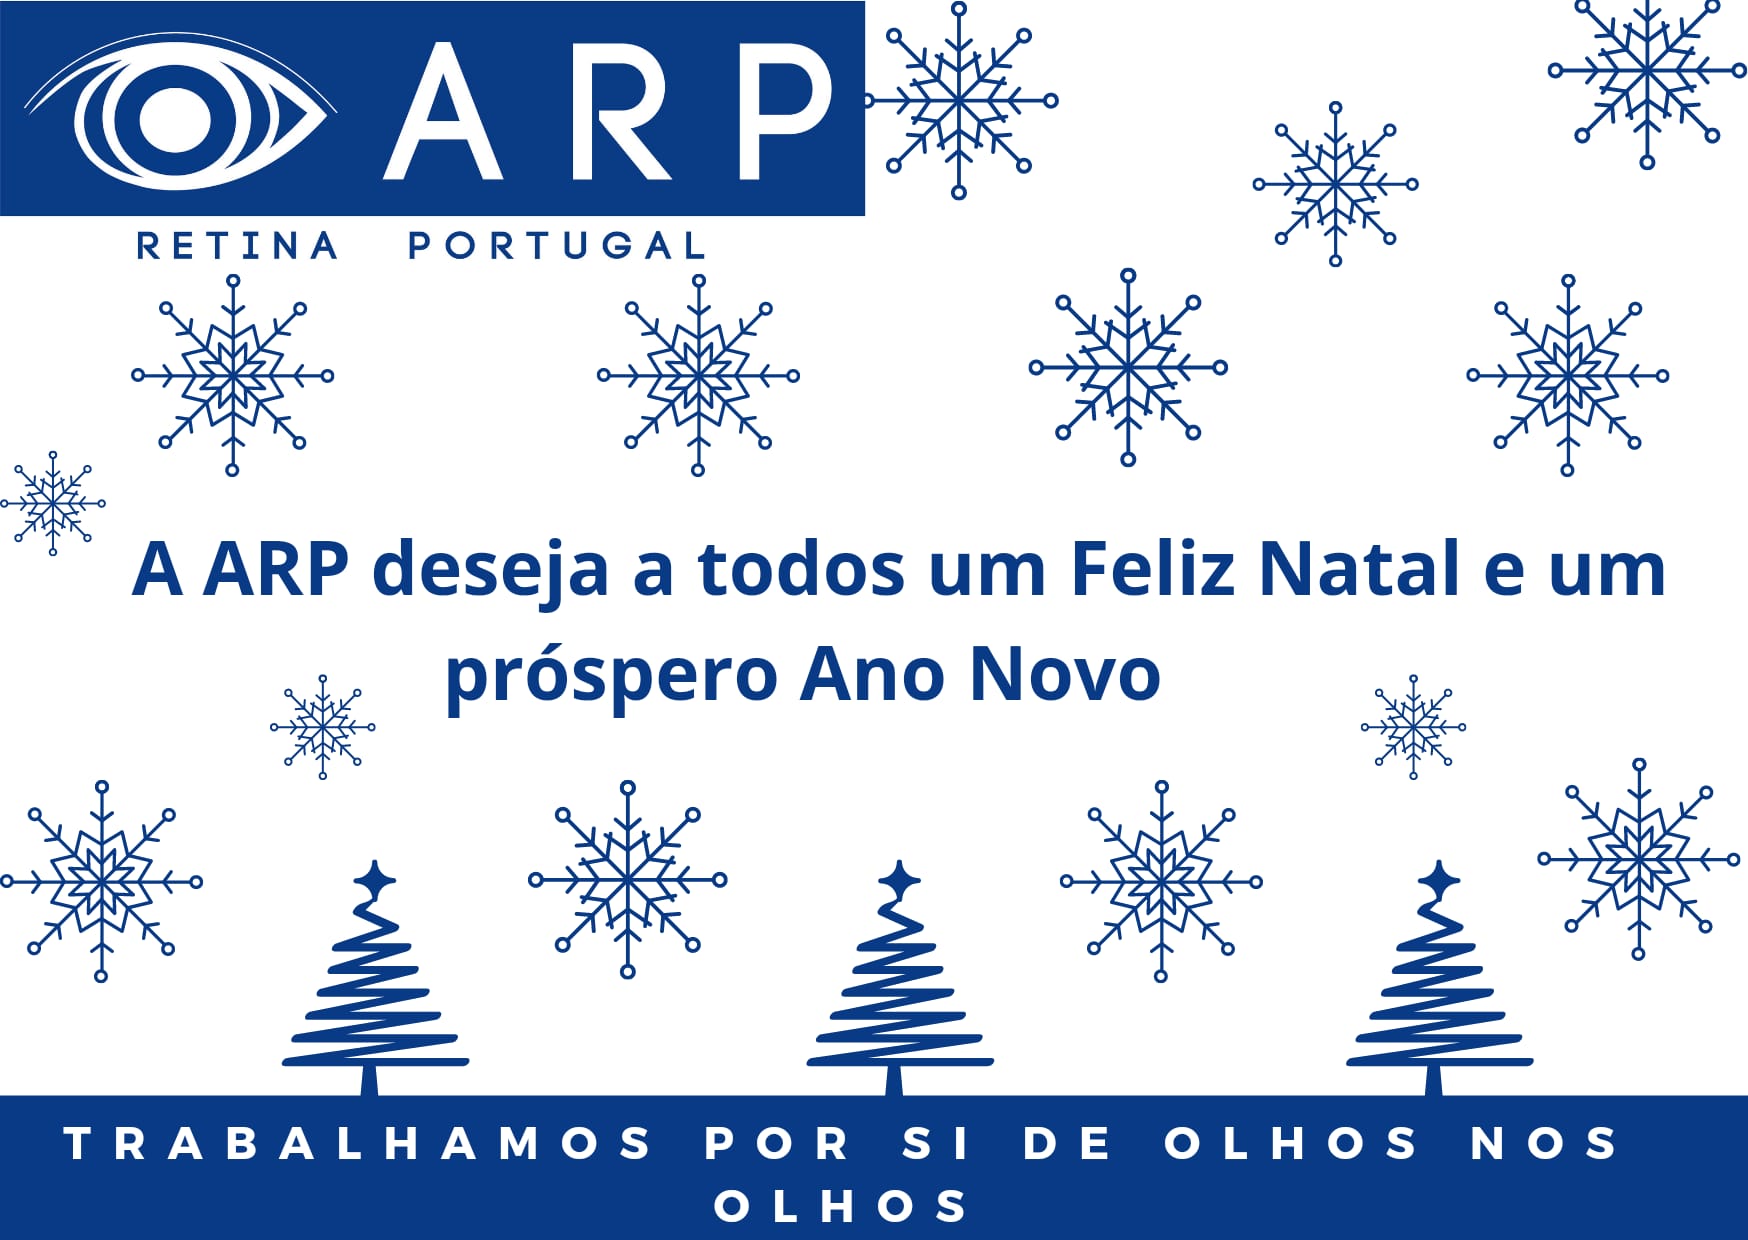 A ARP deseja a todos um Feliz Natal e um próspero Ano Novo.